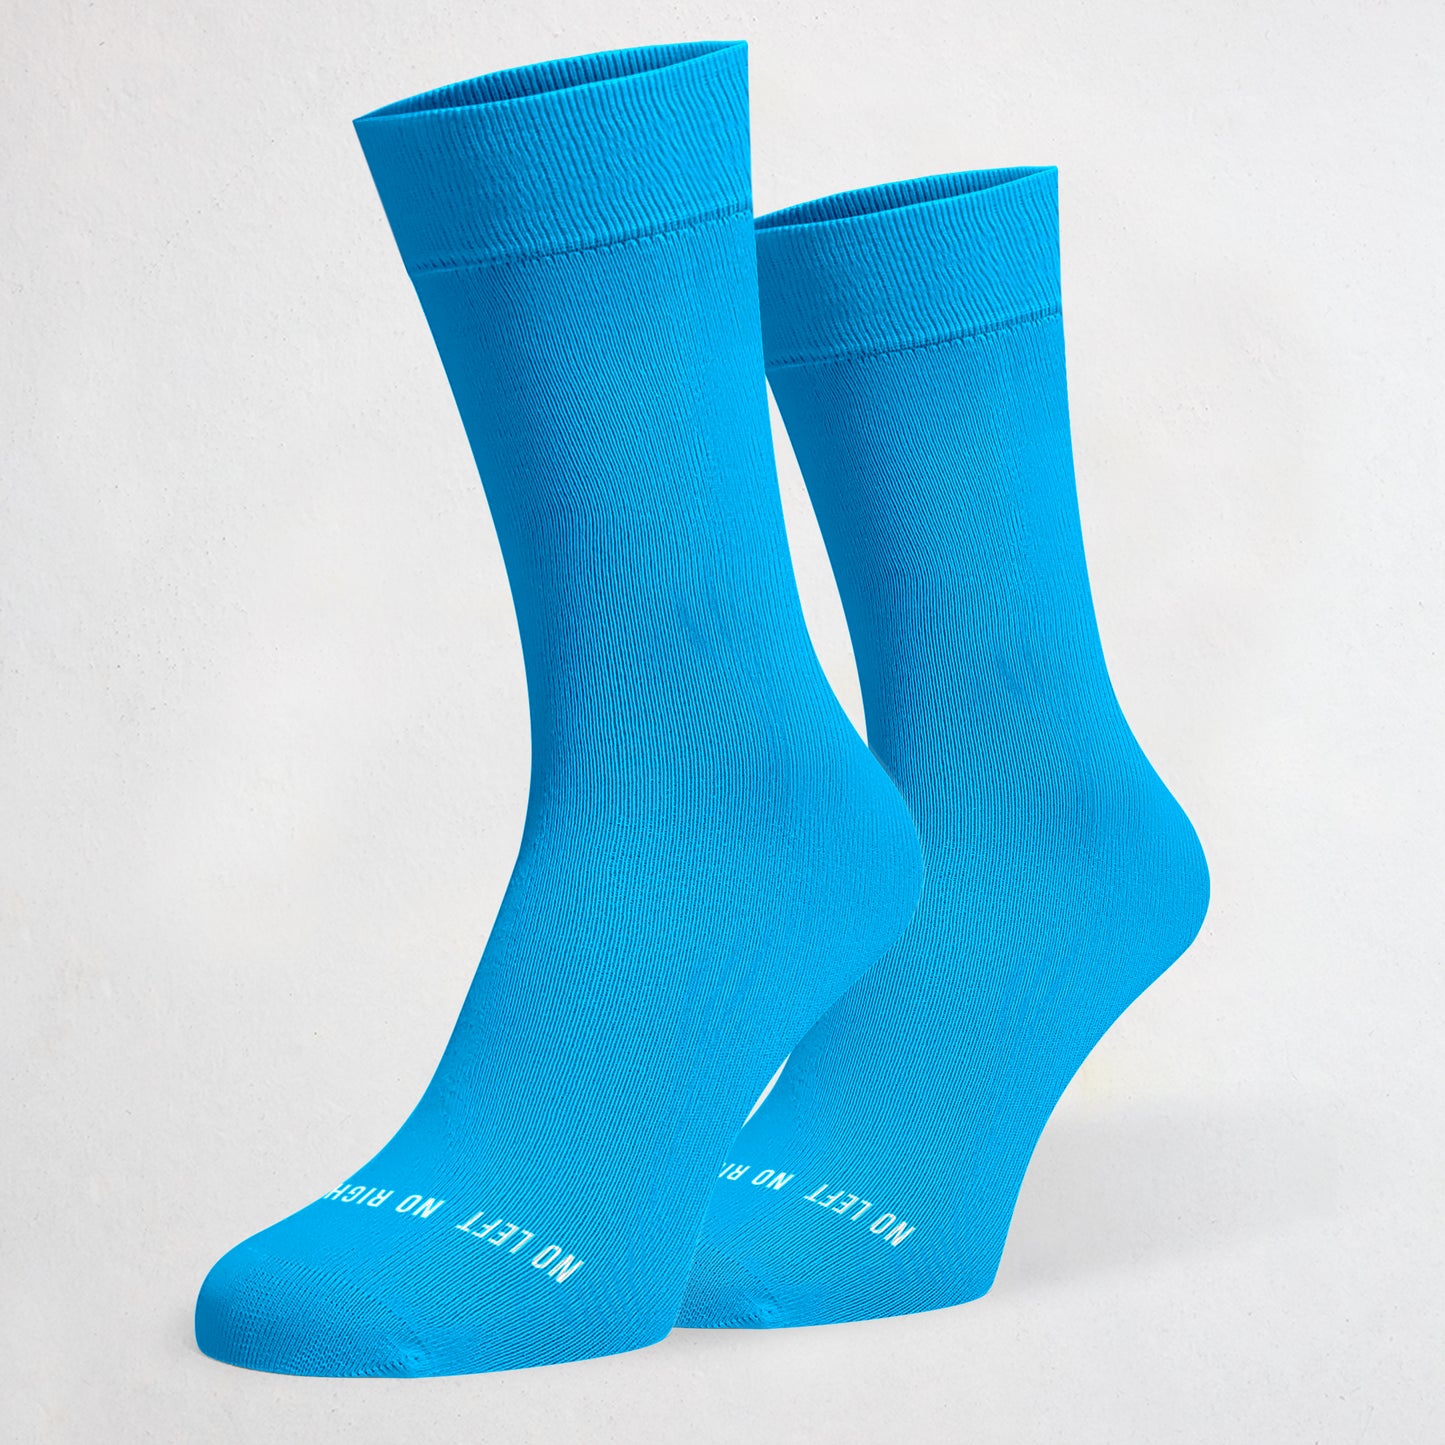 Twin University Blue Socks